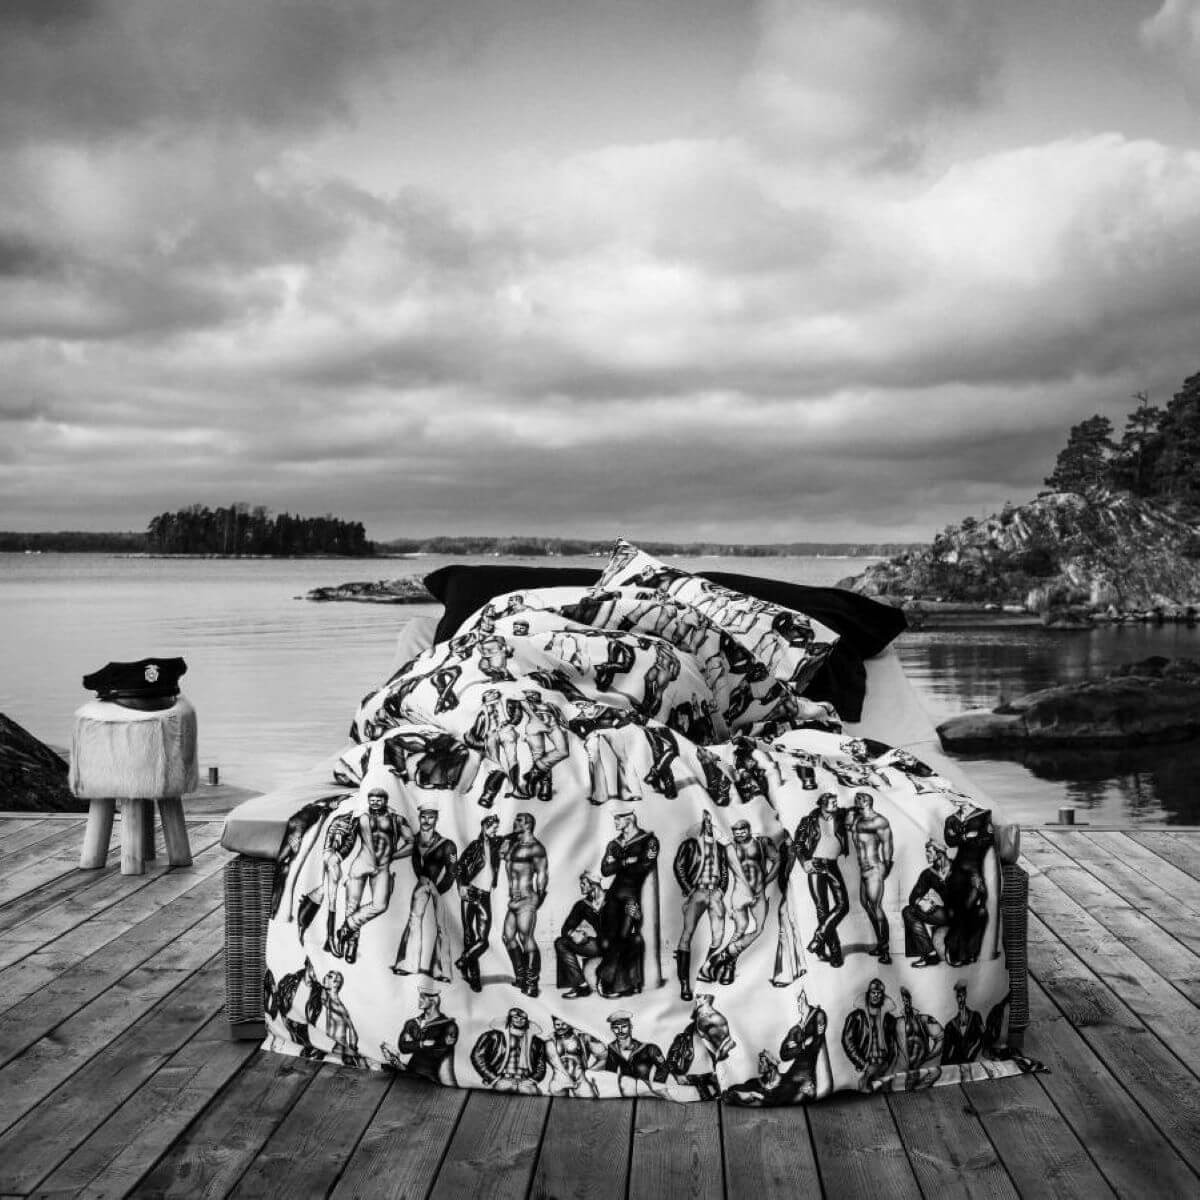 Pościel satynowa TOM OF FINLAND w czarno białej aranżacji na pomoście nad skandynawskim jeziorem. Biało czarna pościel satyna bawełniana rozłożona na łóżku. Wzór w pięknie zbudowane i zadbane męskie sylwetki w kolorach szaro czarnych na białym tle. Skandynawski design